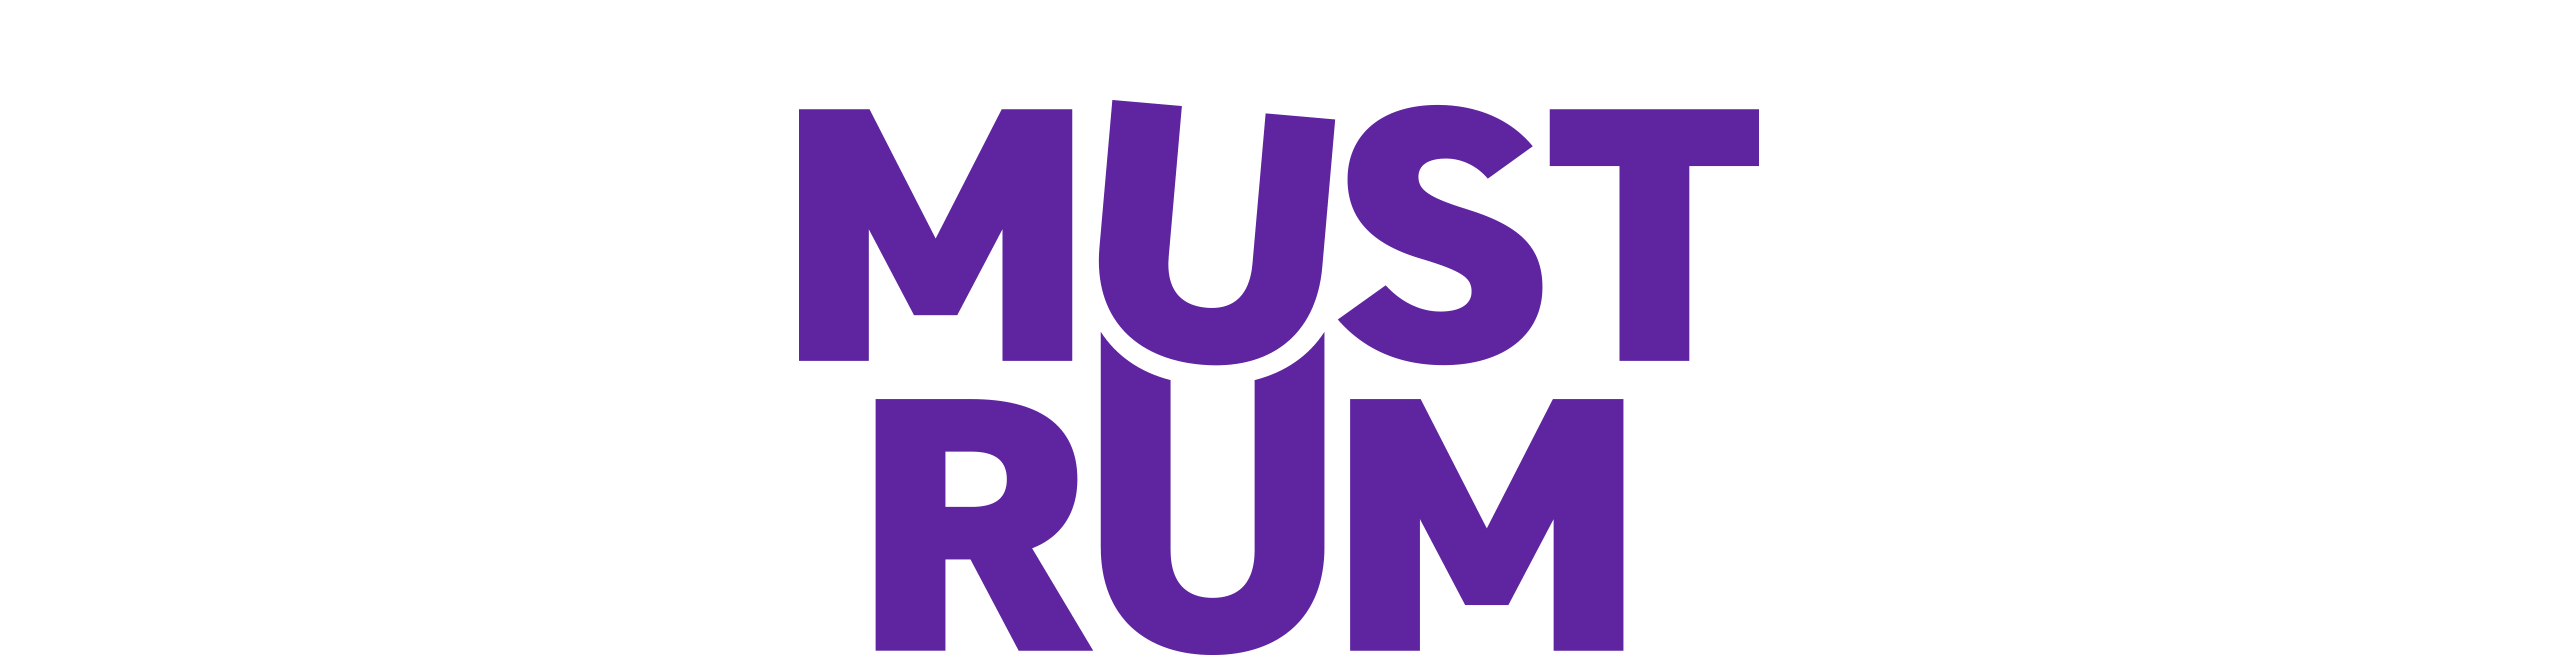 Mustrum logotype